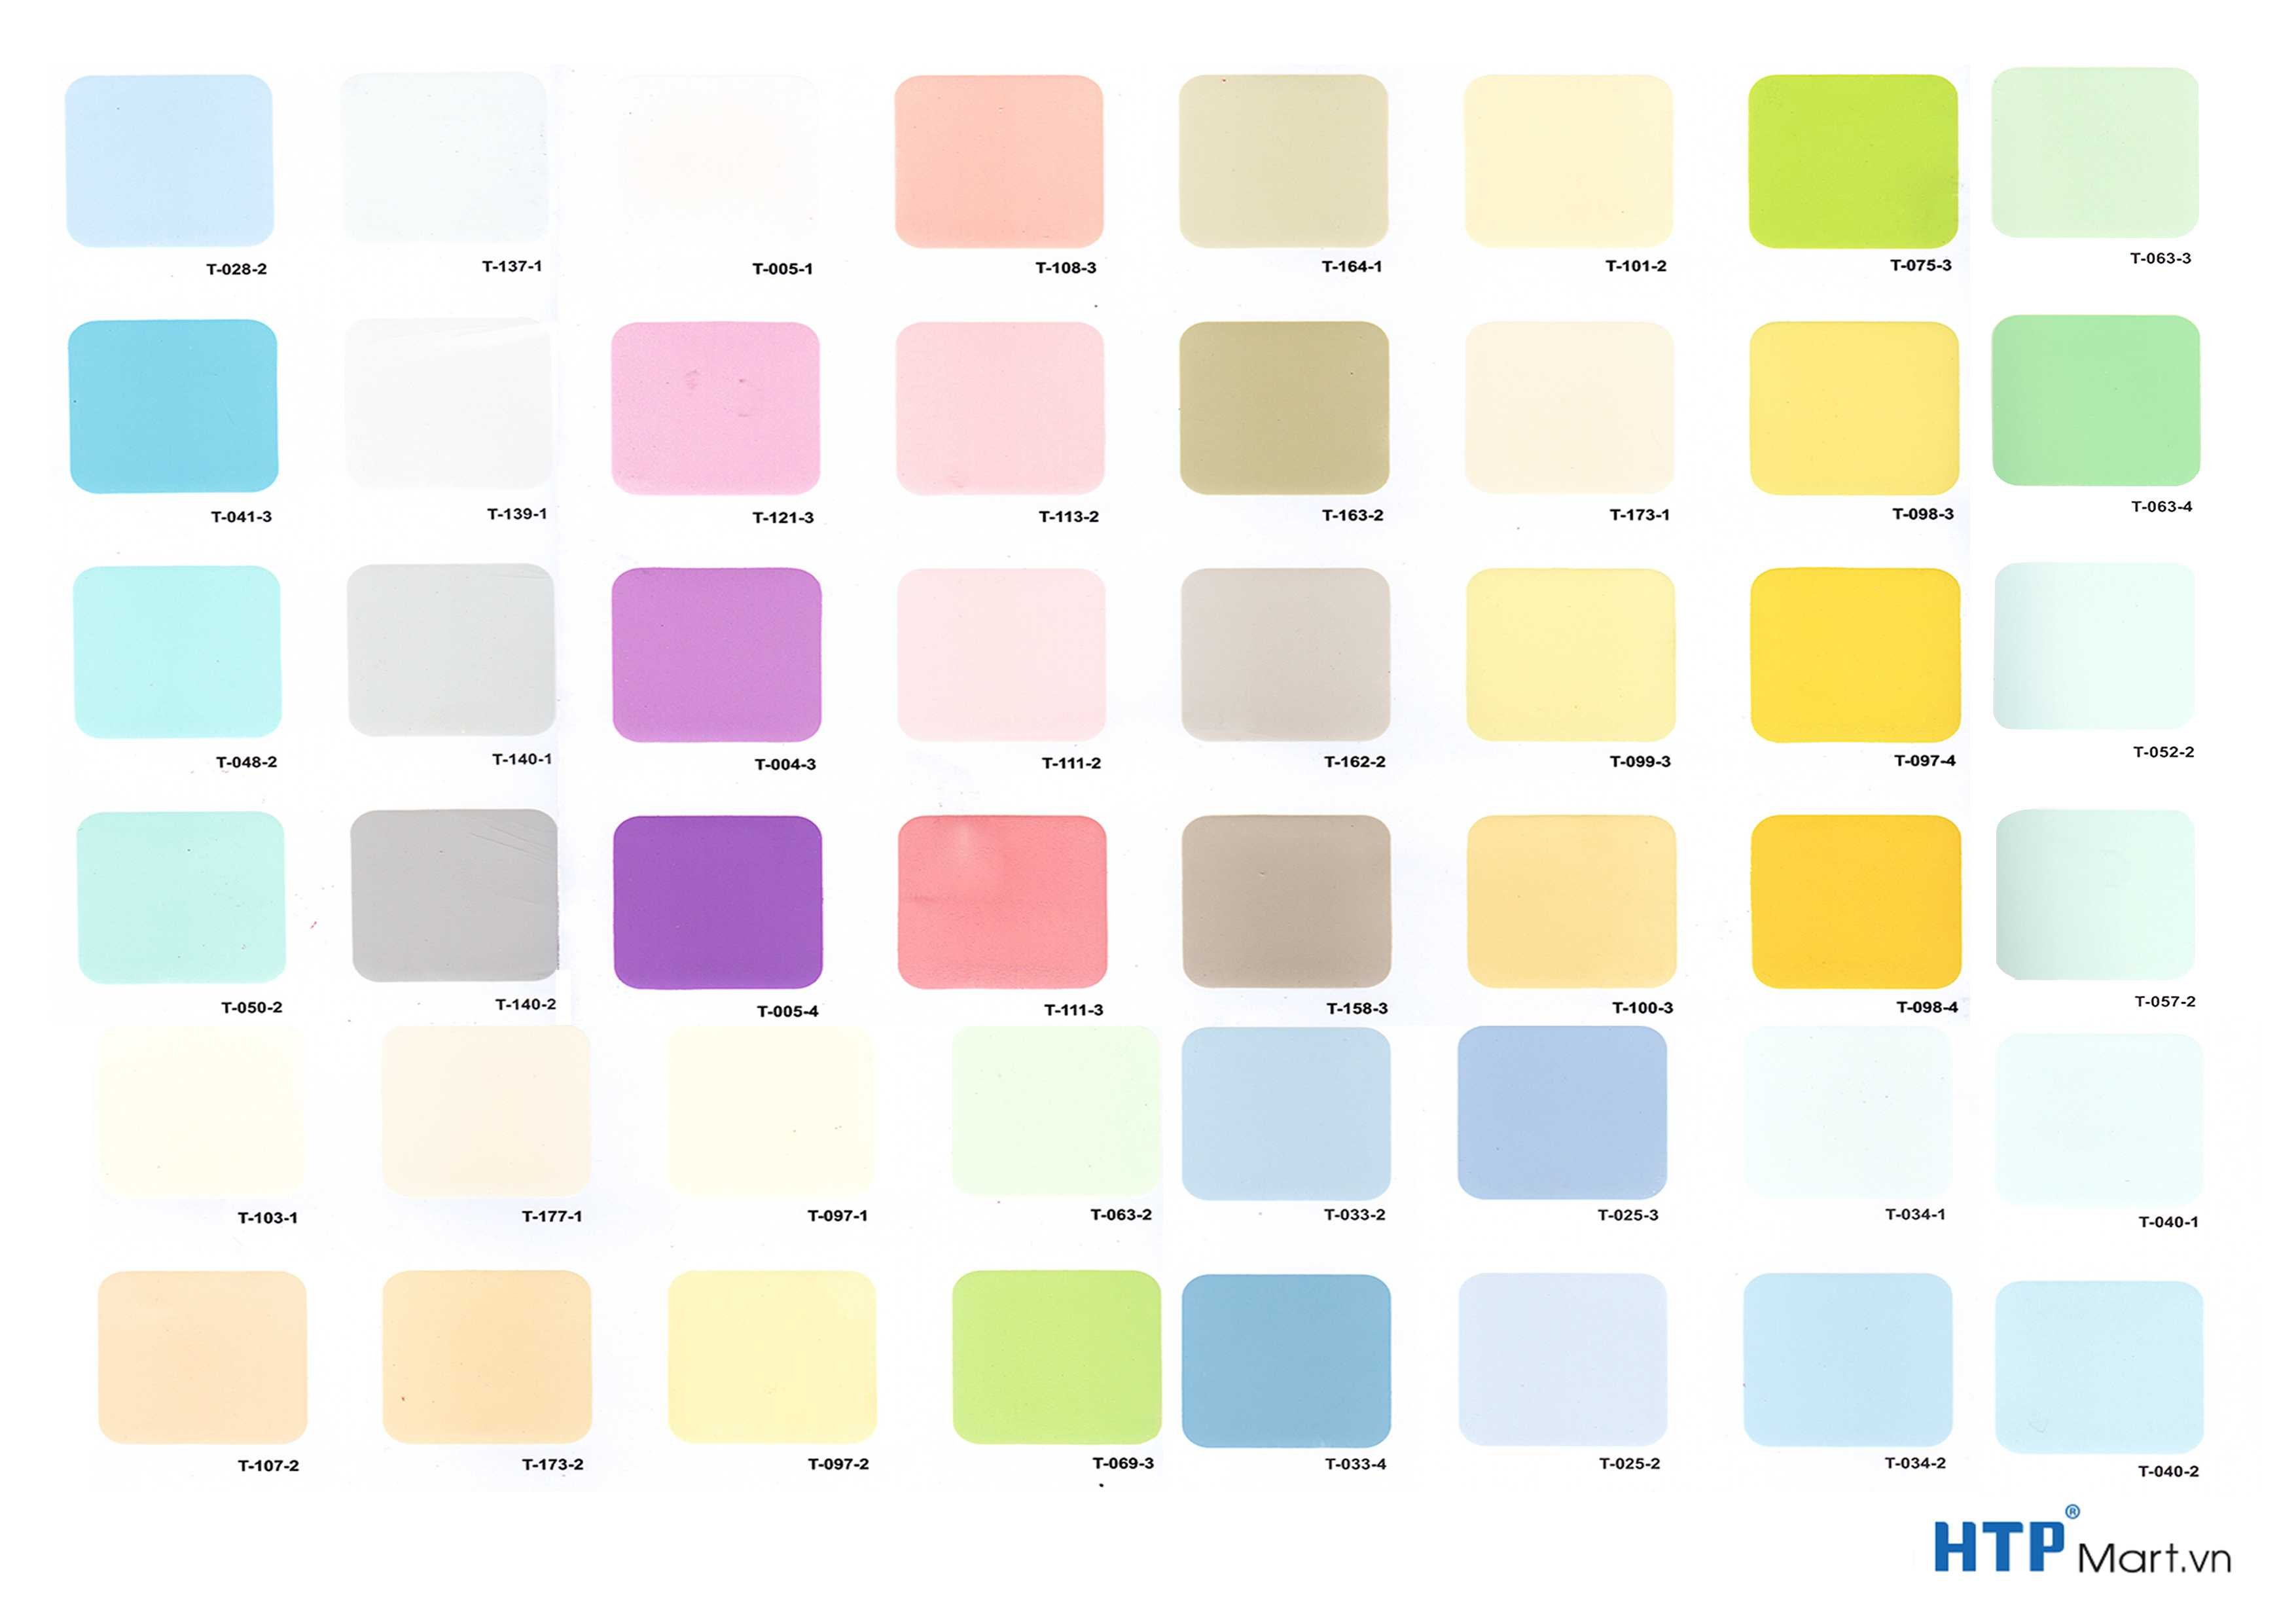 Bảng màu sơn nội thất Terraco sẽ khiến bạn cảm thấy bất ngờ và thích thú với độ đa dạng của các gam màu sắc. Hãy khám phá để biết thêm về những lựa chọn sơn phù hợp nhất cho phòng khách, phòng ngủ hay phòng bếp của mình nhé!